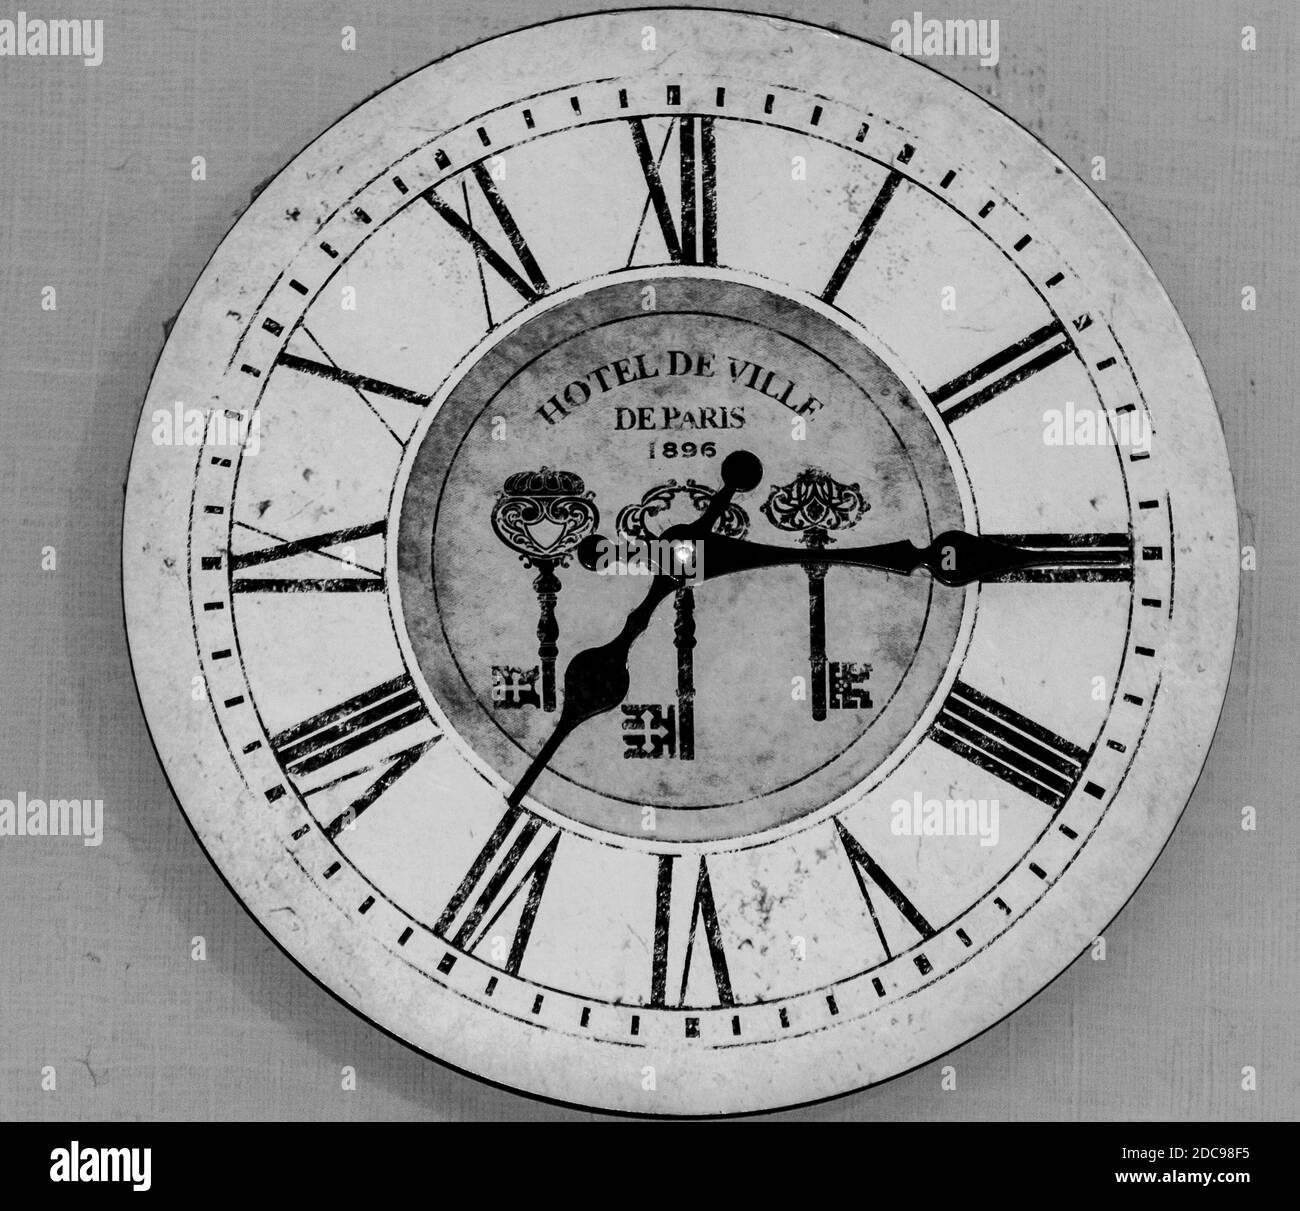 Orologio da parete in bianco e nero con numeri romani, con tre tasti e testo 'Hotel De Ville De Paris 1896' sulla faccia Foto Stock